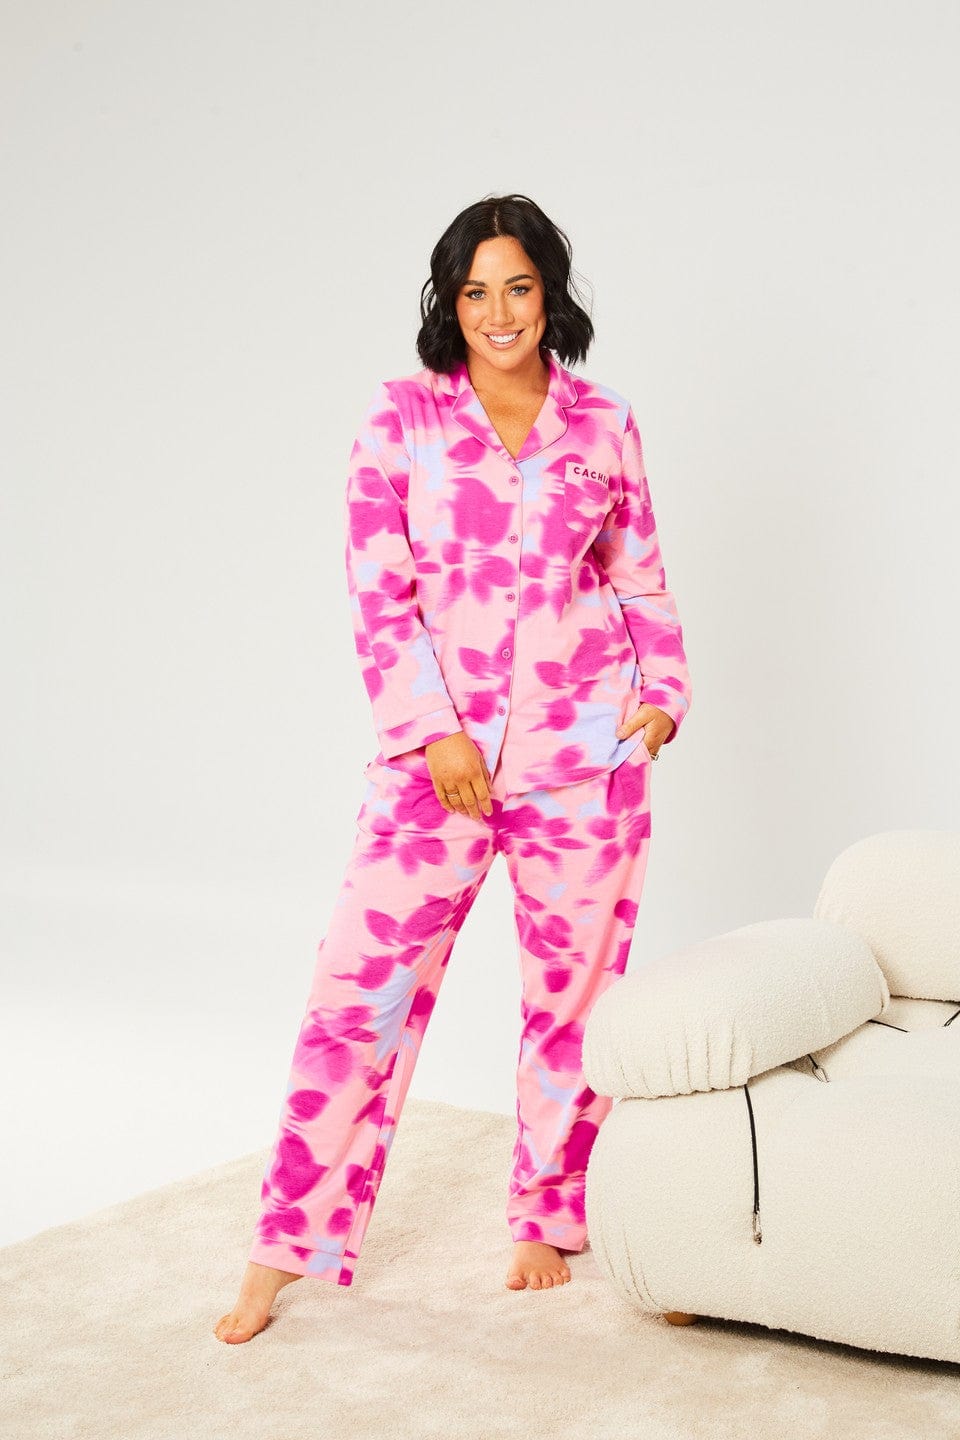 Cachia Sloane Pajamas